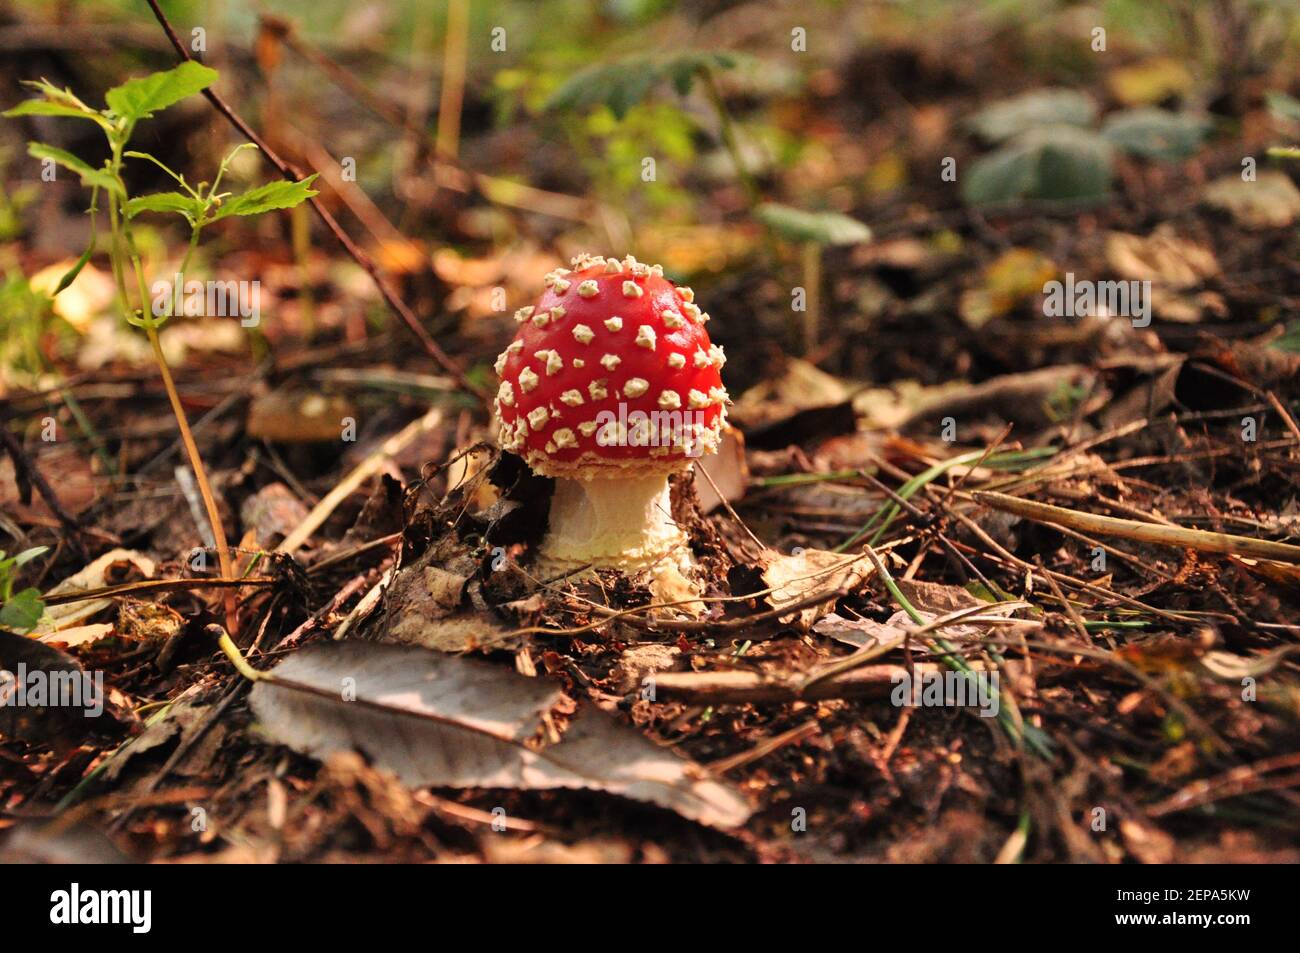 Mouche de champignon toxique avec chapeau rouge et taches blanches Banque D'Images